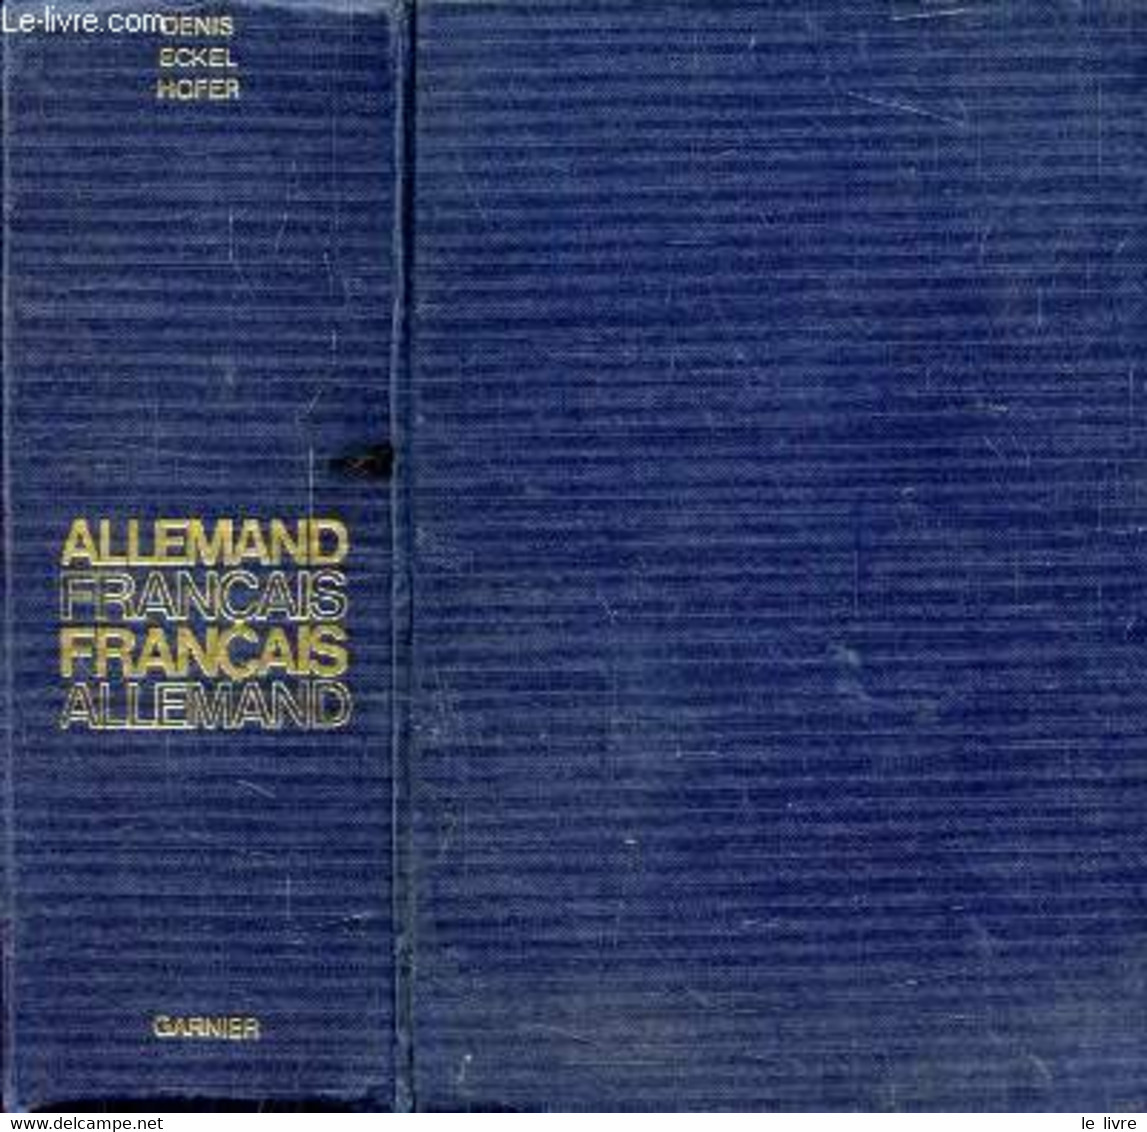 GRAND DICTIONNAIRE ALLEMAND-FRANCAIS ET FRANCAIS-ALLEMAND - DENIS JOSEPH, ECKEL M., HOFER H. - 1977 - Atlas